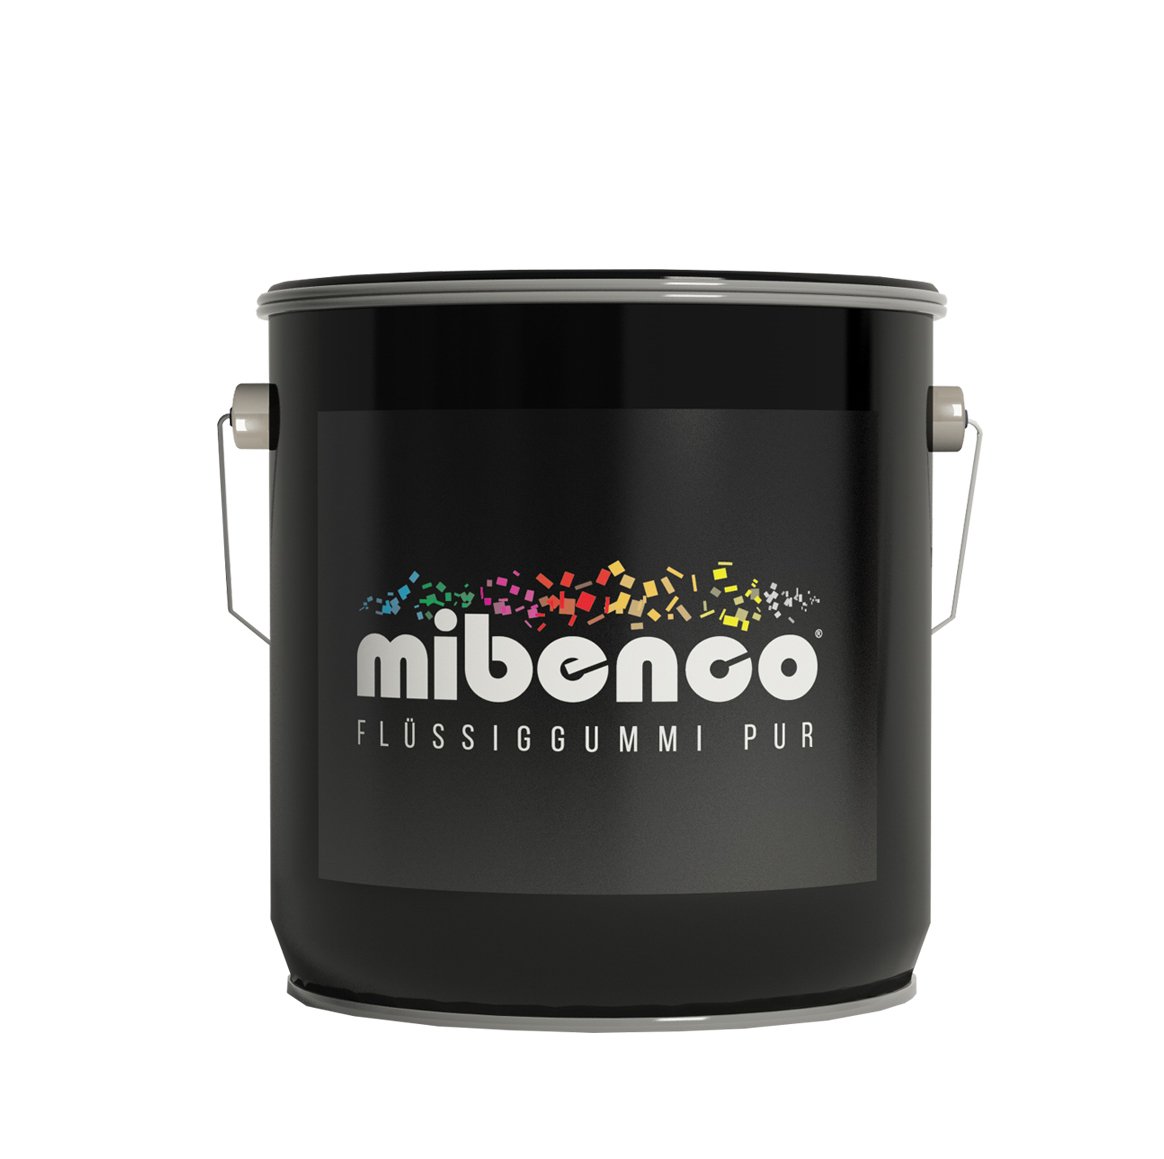 mibenco 72320000 Flüssiggummi Pur, 3000 g, Klar Matt - Schutz und Isolation zum Tauchen und Pinseln von mibenco